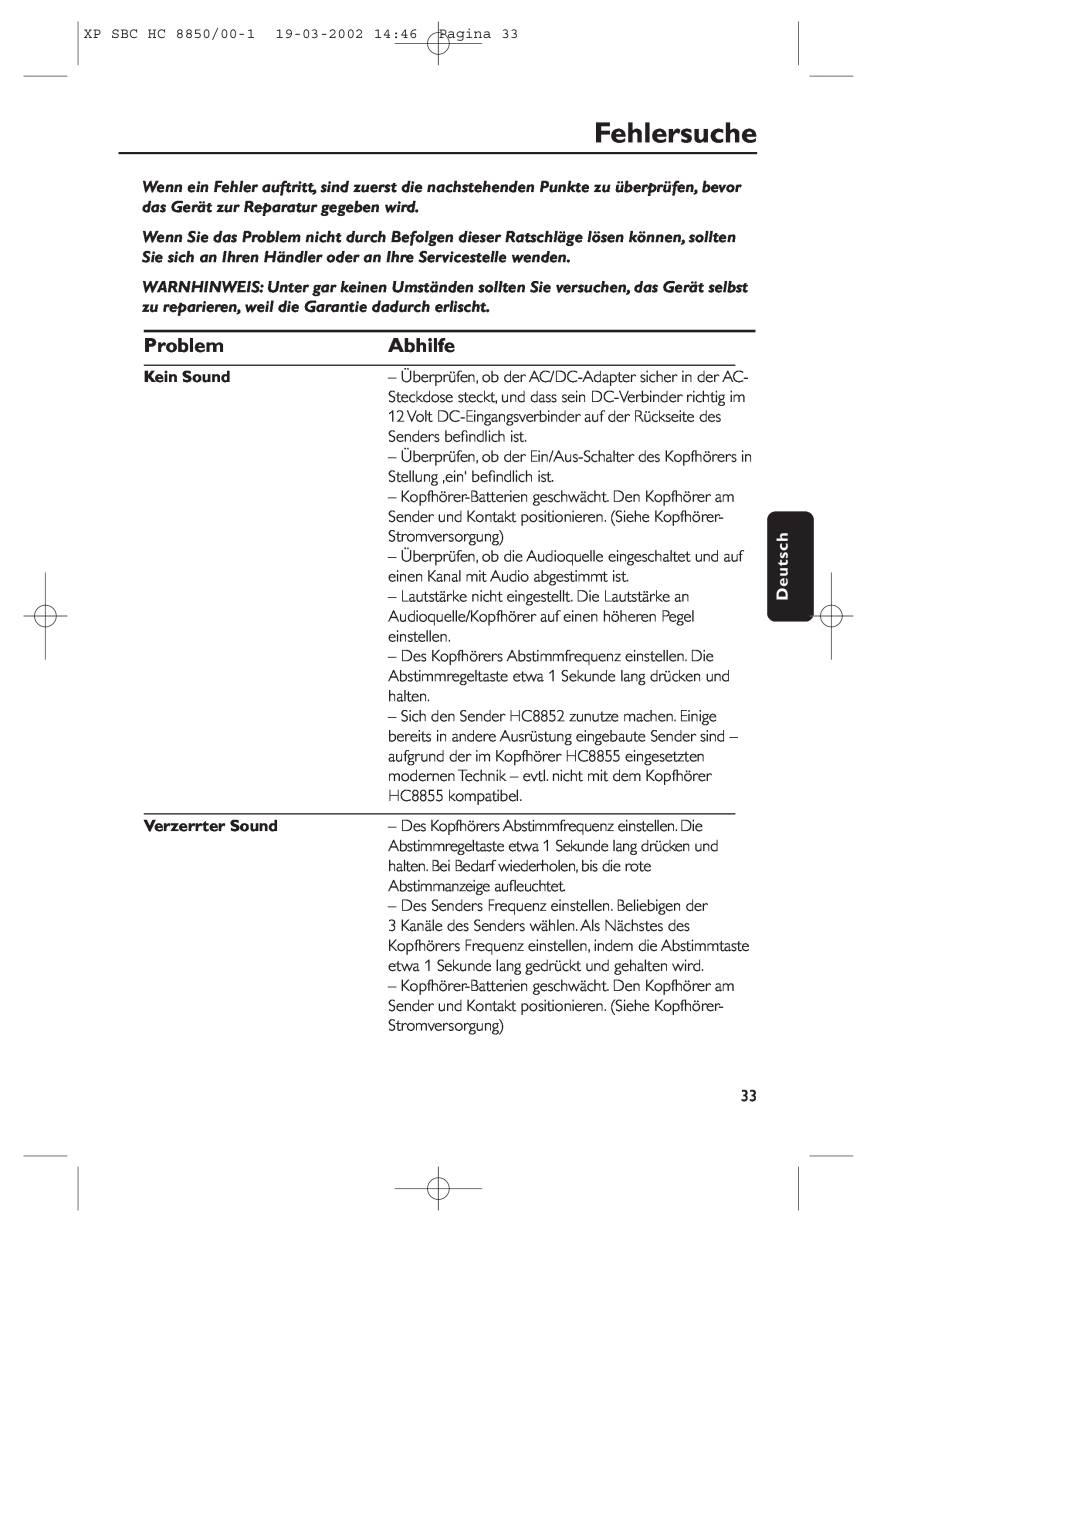 Philips HC8850 manual Fehlersuche, Problem, Abhilfe, Kein Sound, Verzerrter Sound, Deutsch 